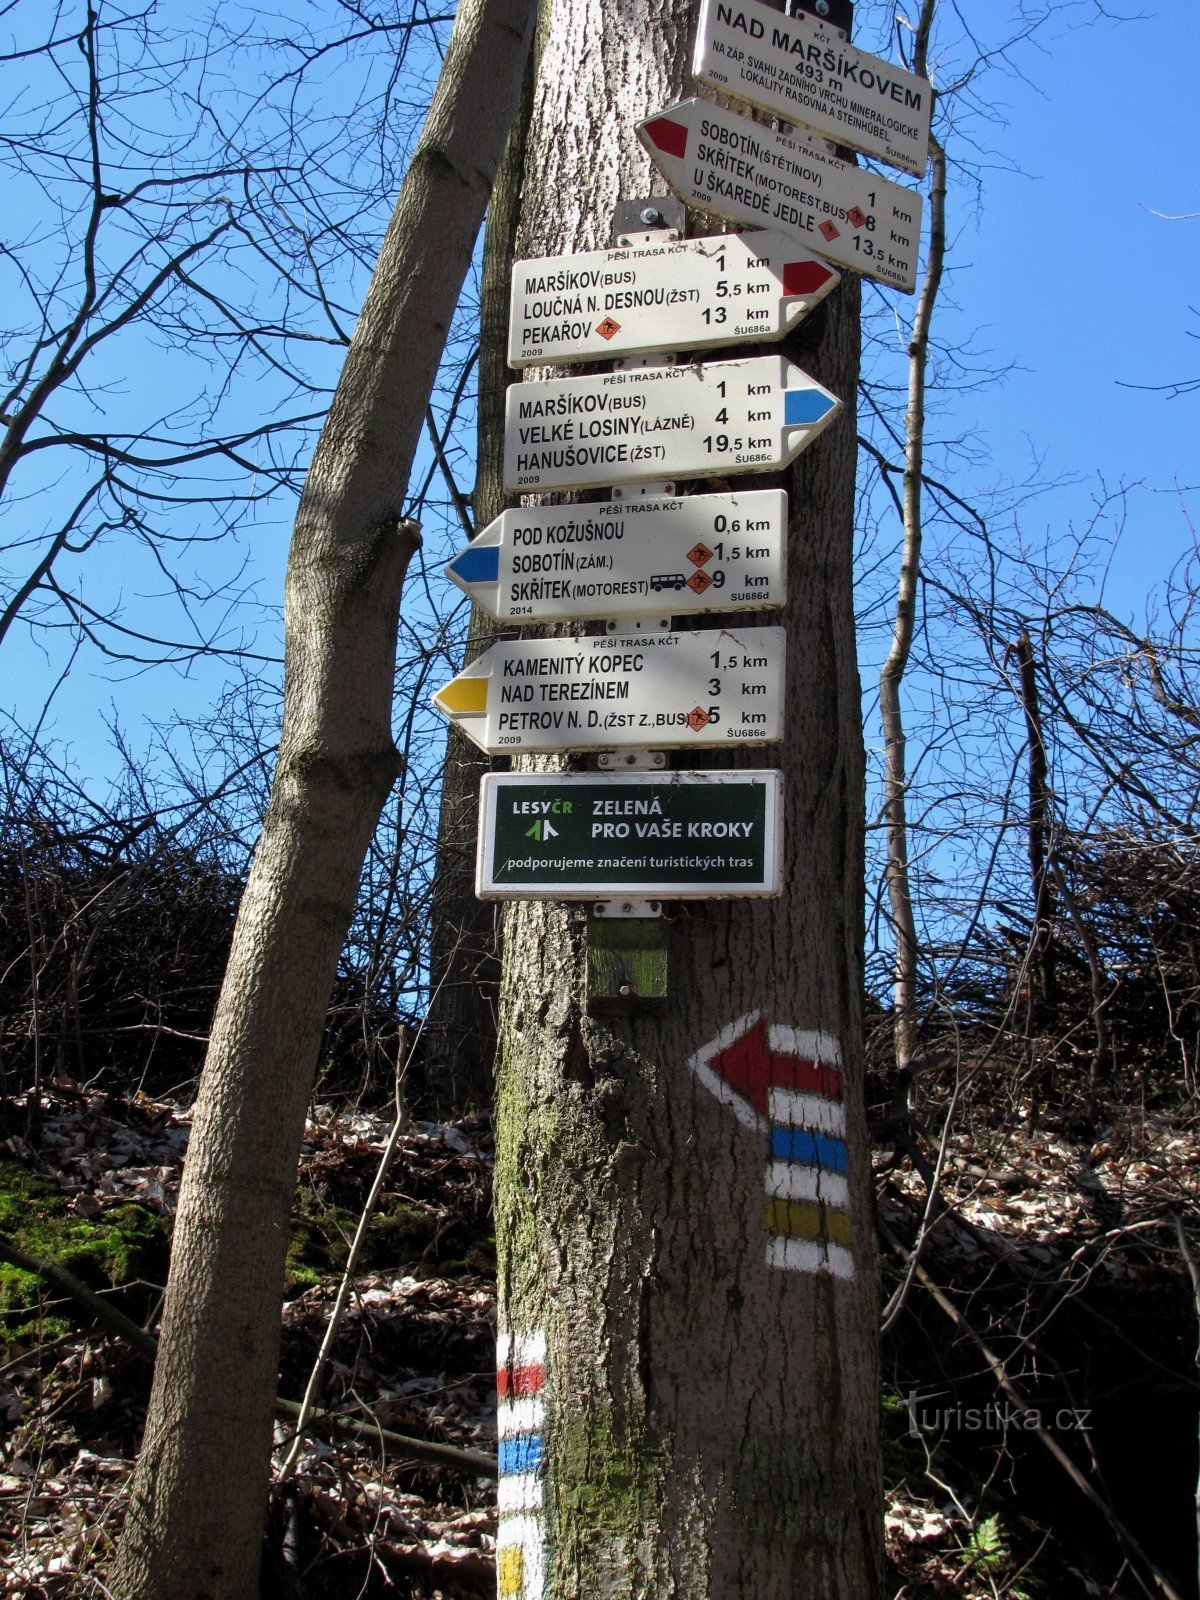 signpost along the way